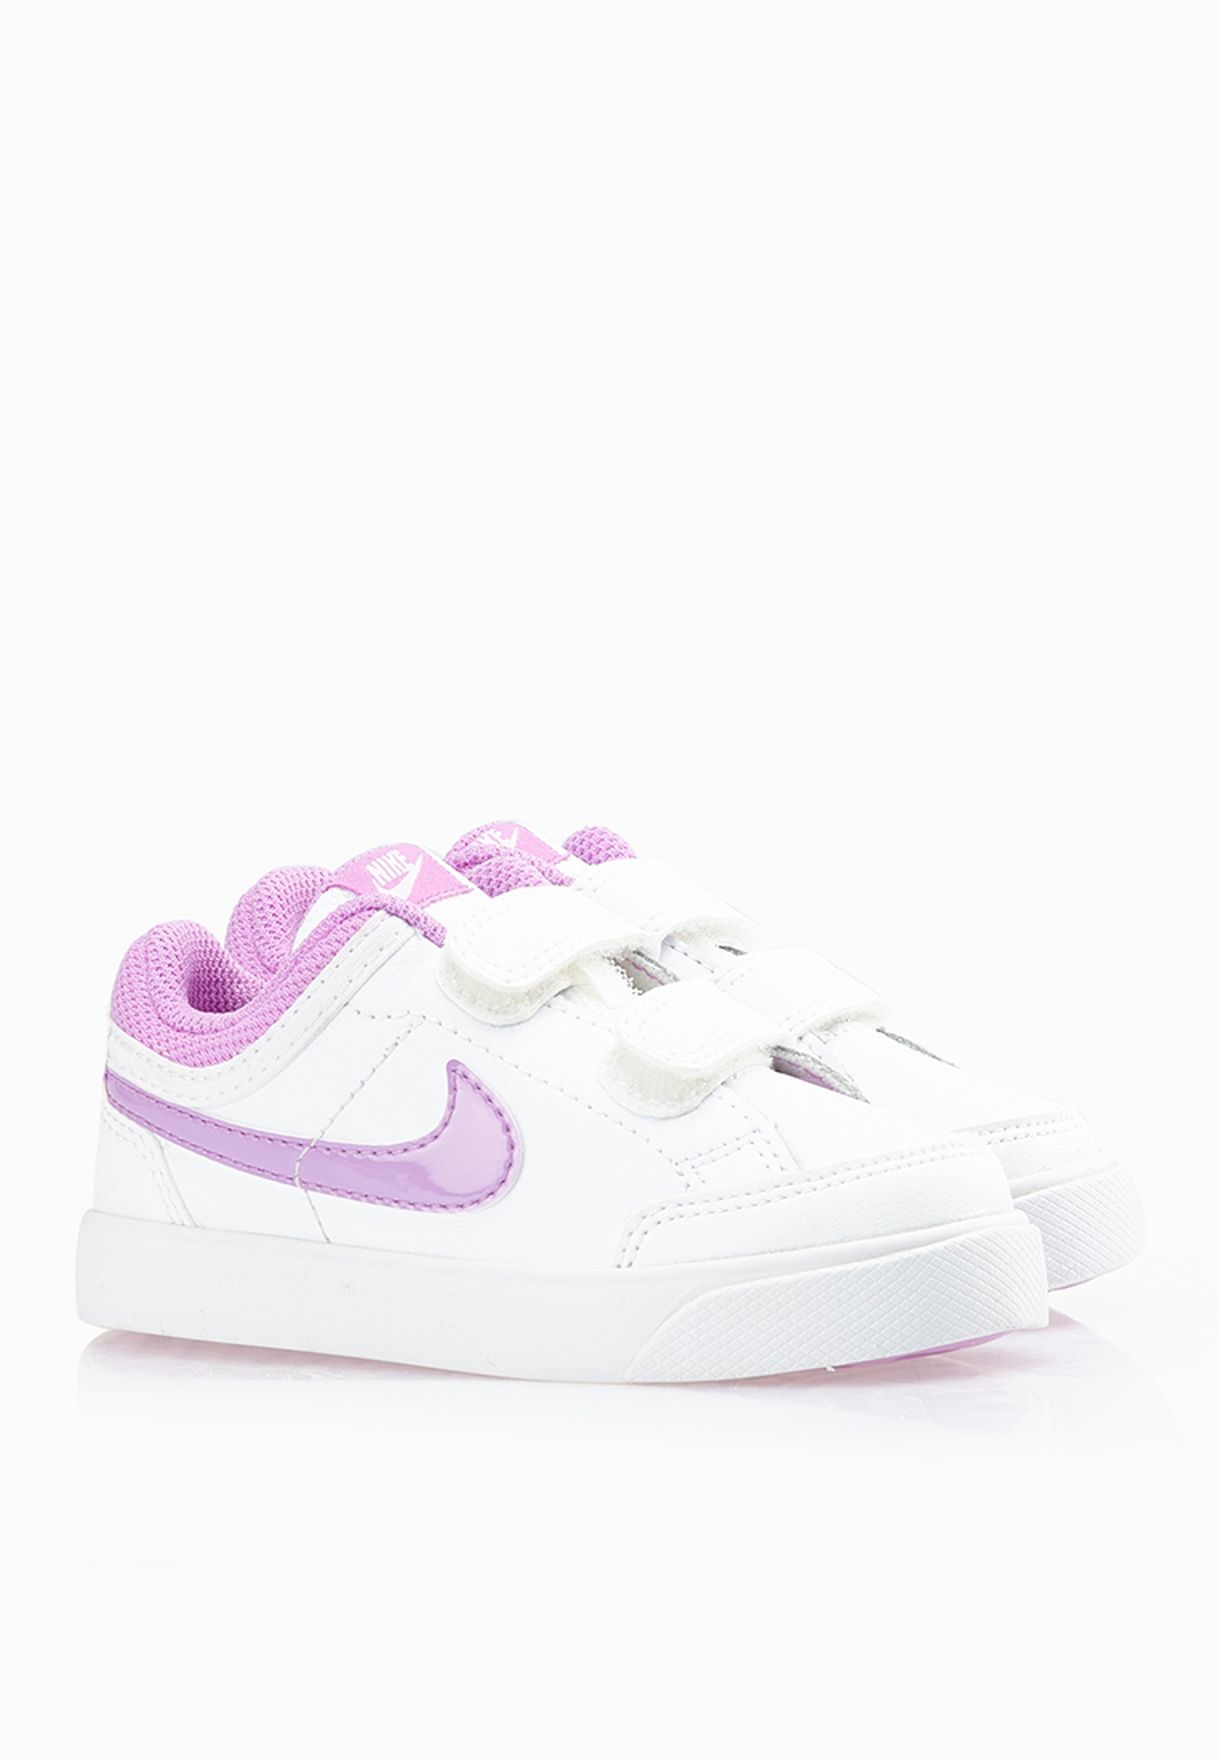 Buy Nike white Nike Capri 3 Infant for 